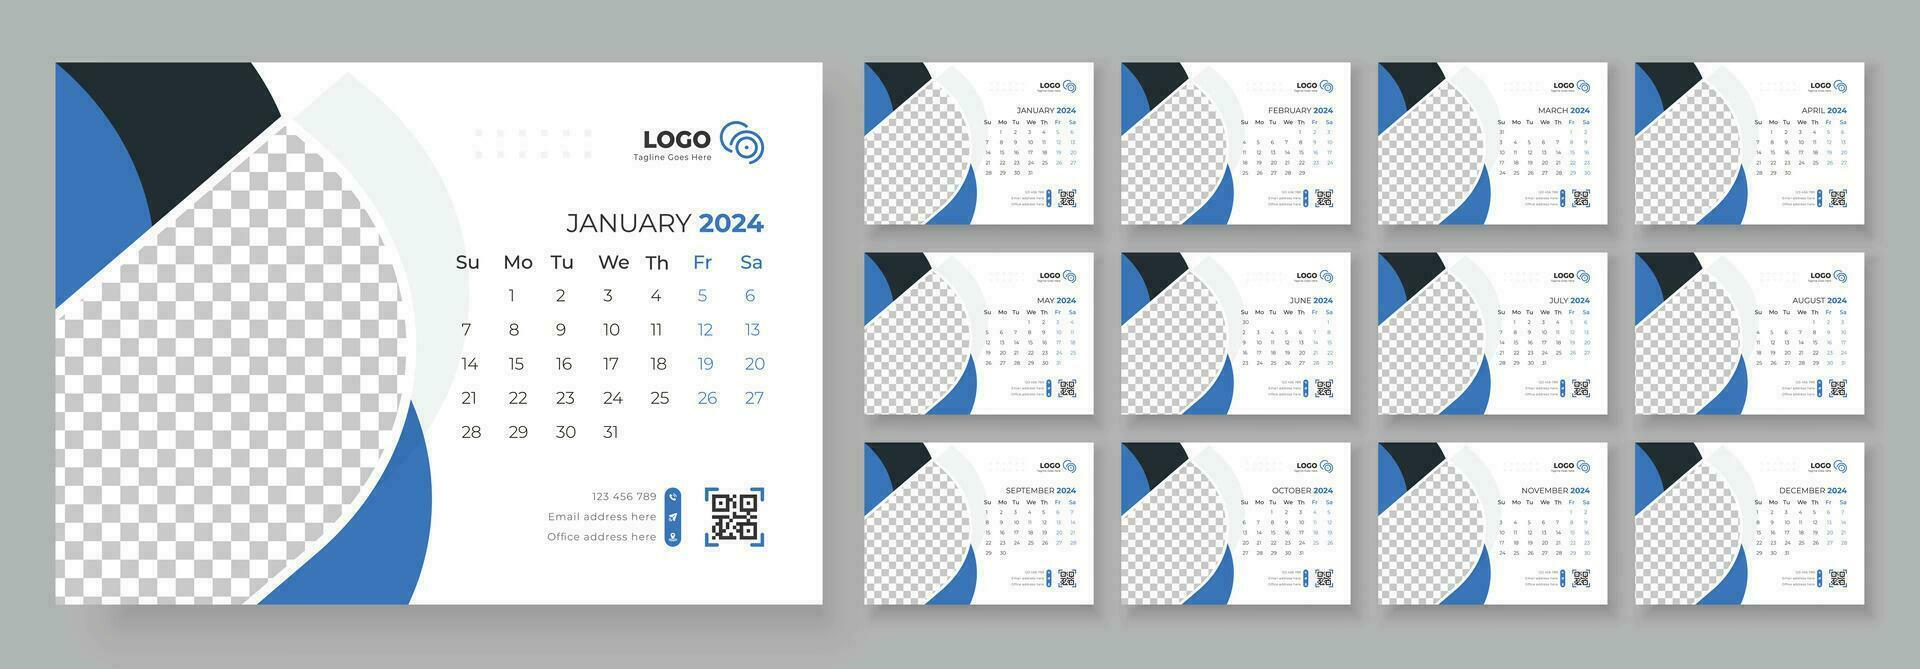 skrivbord kalender mall 2024. skrivbord kalender i en minimalistisk stil. vecka börjar på söndag. kalender 2024 planerare företags- mall design. vektor